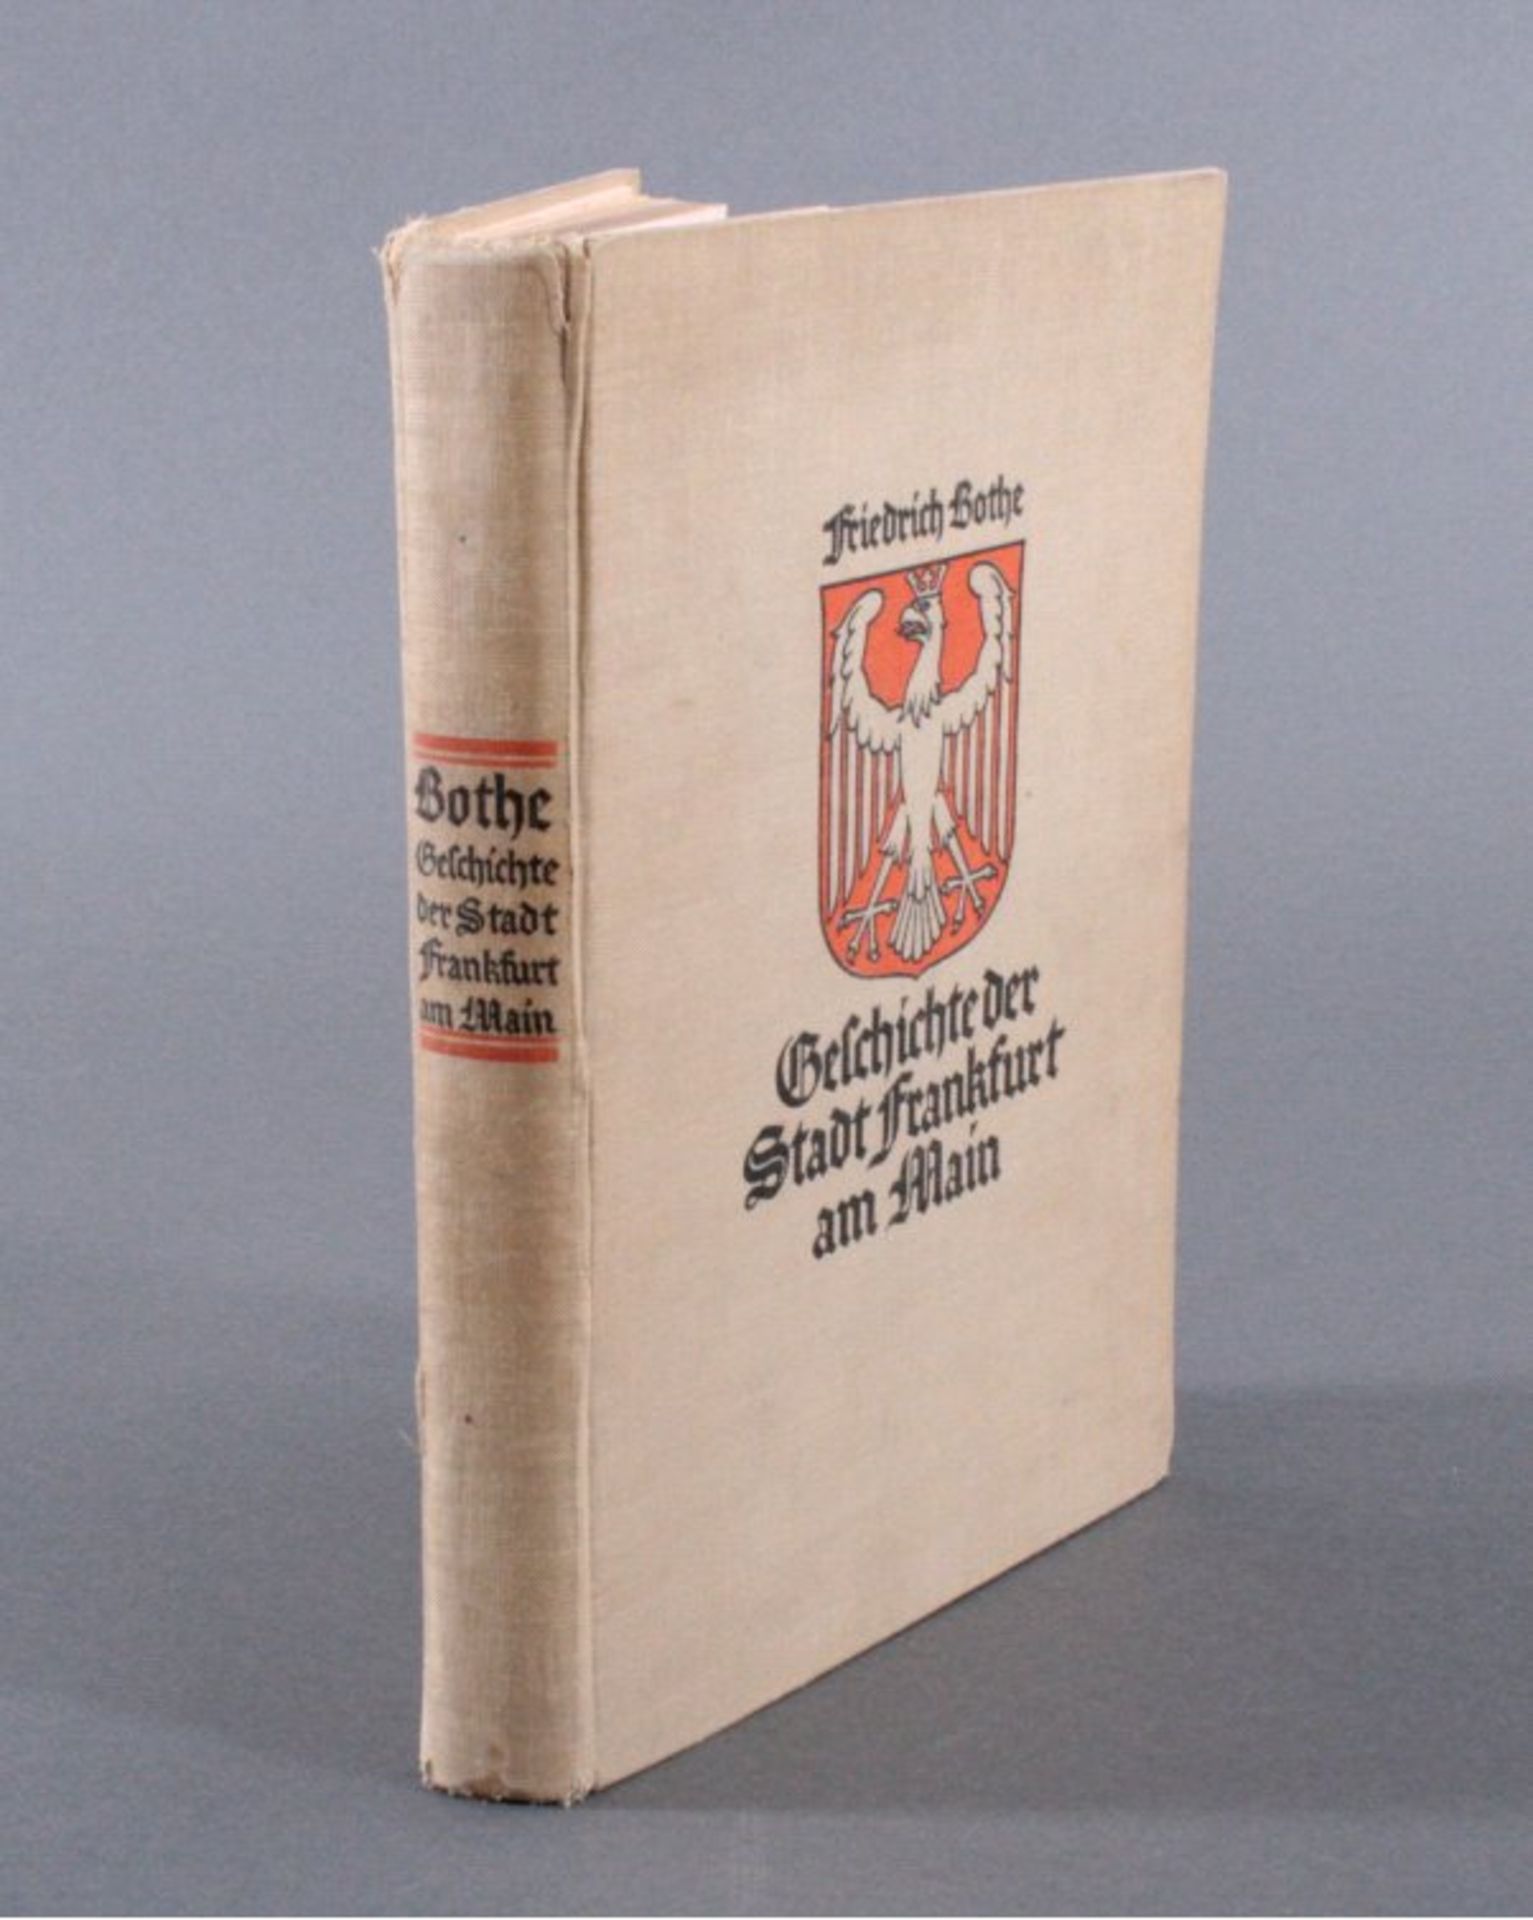 Geschichte der Stadt Frankfurt am Main 1929von Friedrich BotheAusgabe v. 1929. 390 Seiten mit